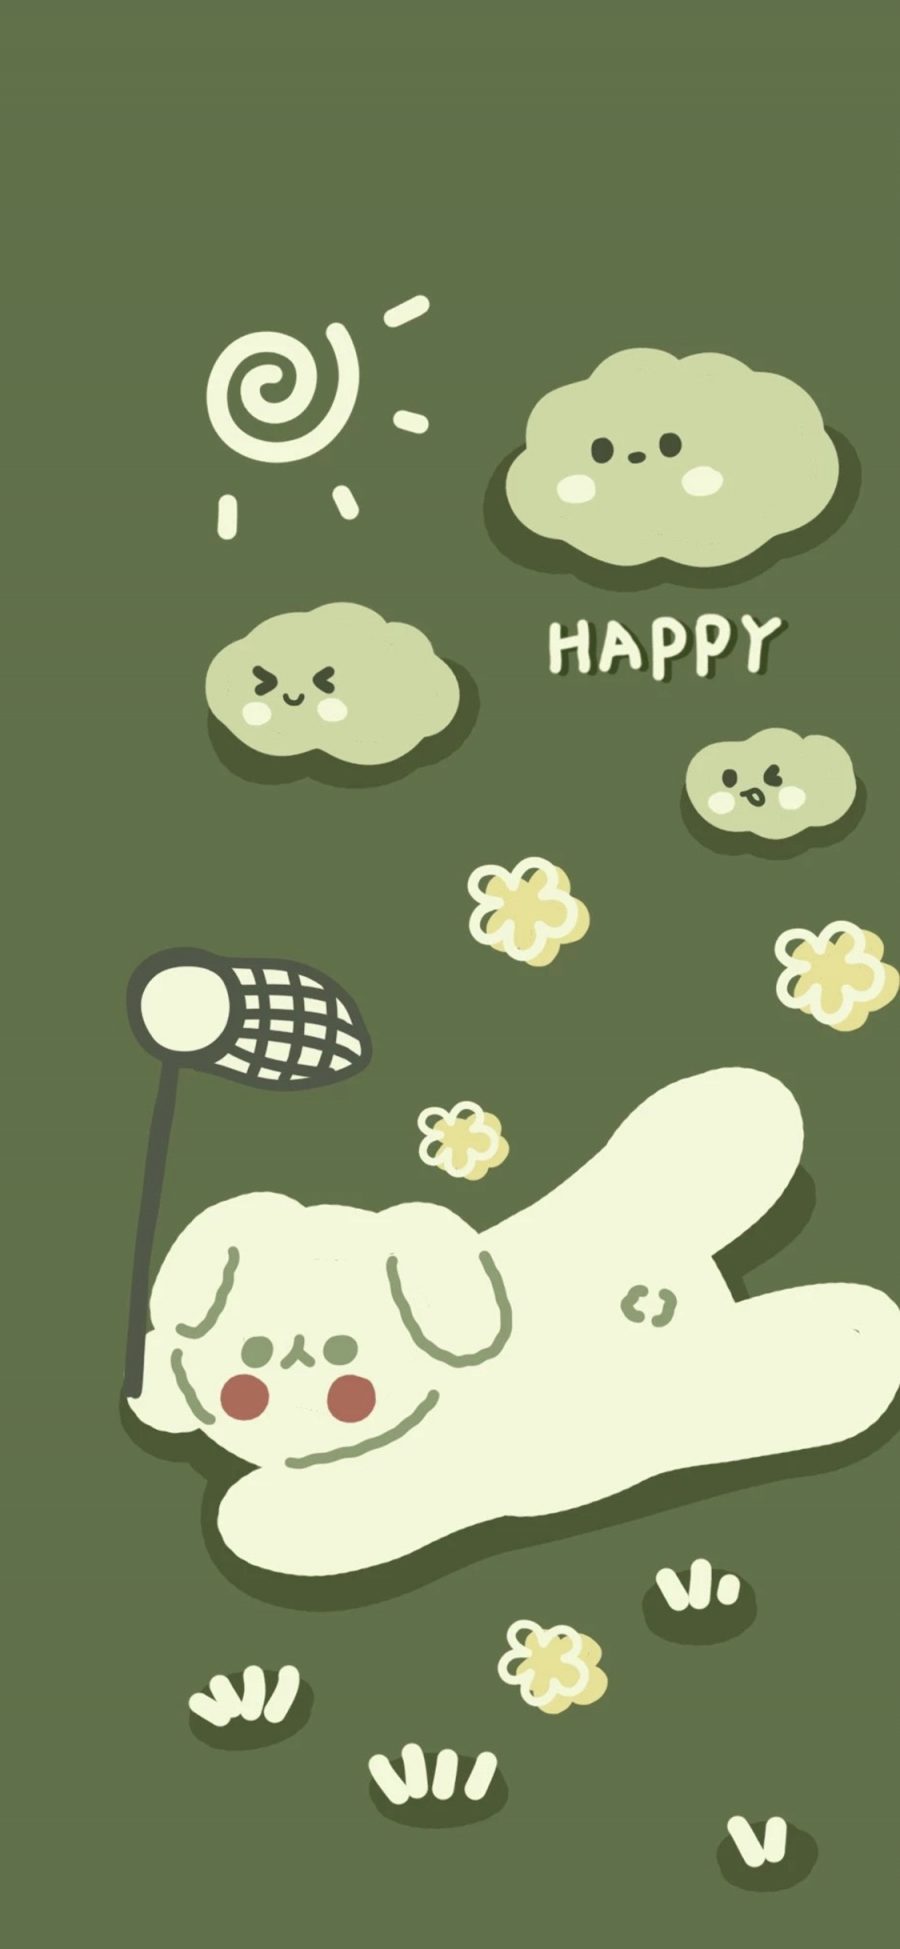 [2436×1125]绿色背景 卡通 小狗 happy （是谁偷吃了奶酪） 苹果手机动漫壁纸图片